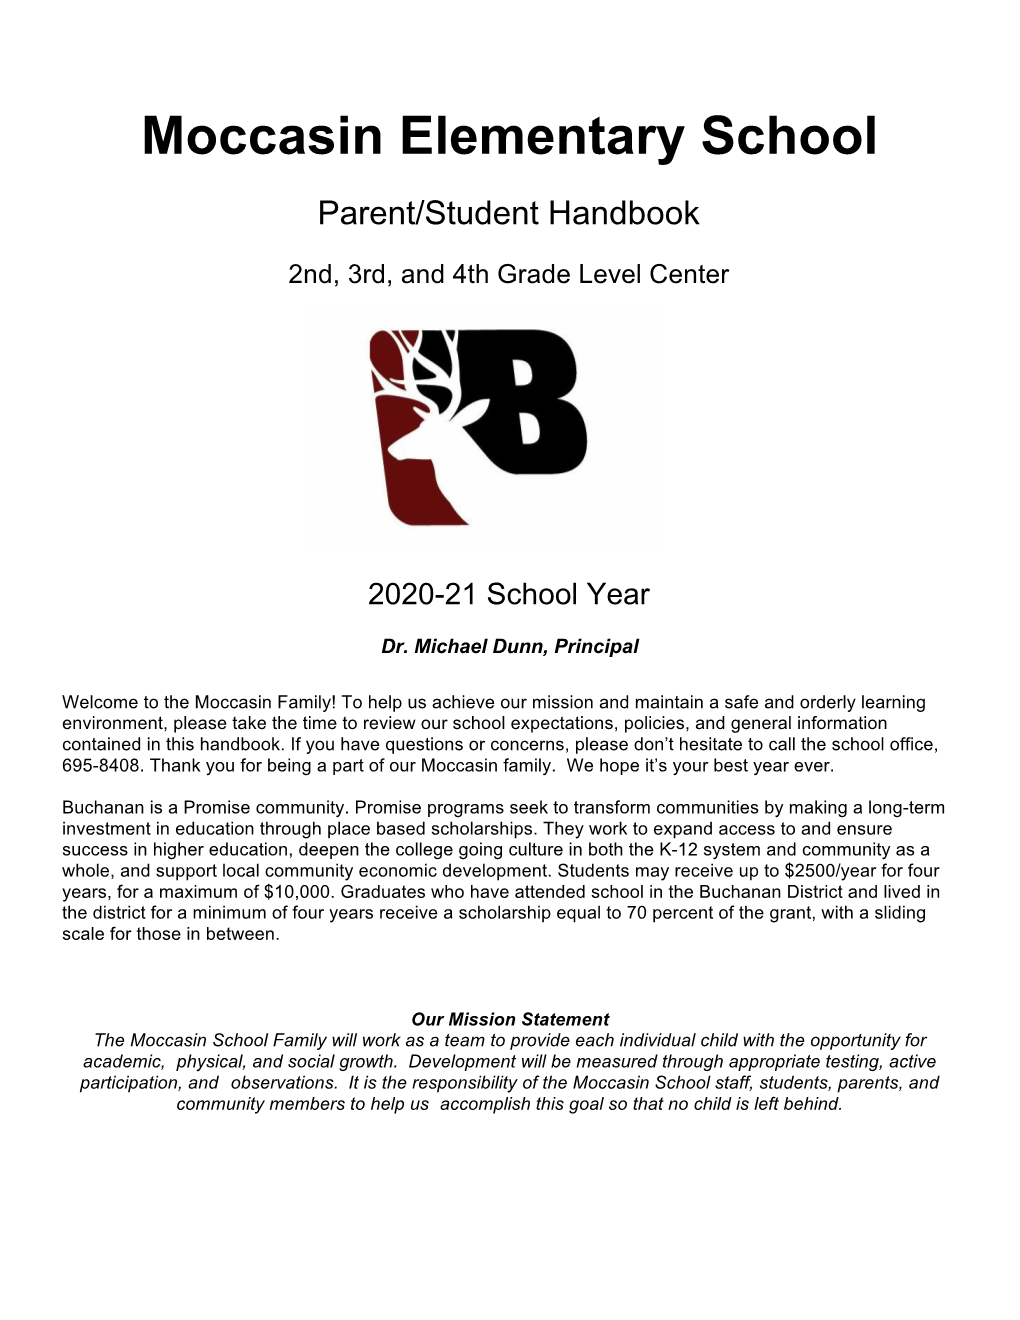 Moccasin Elementary School Parent/Student Handbook